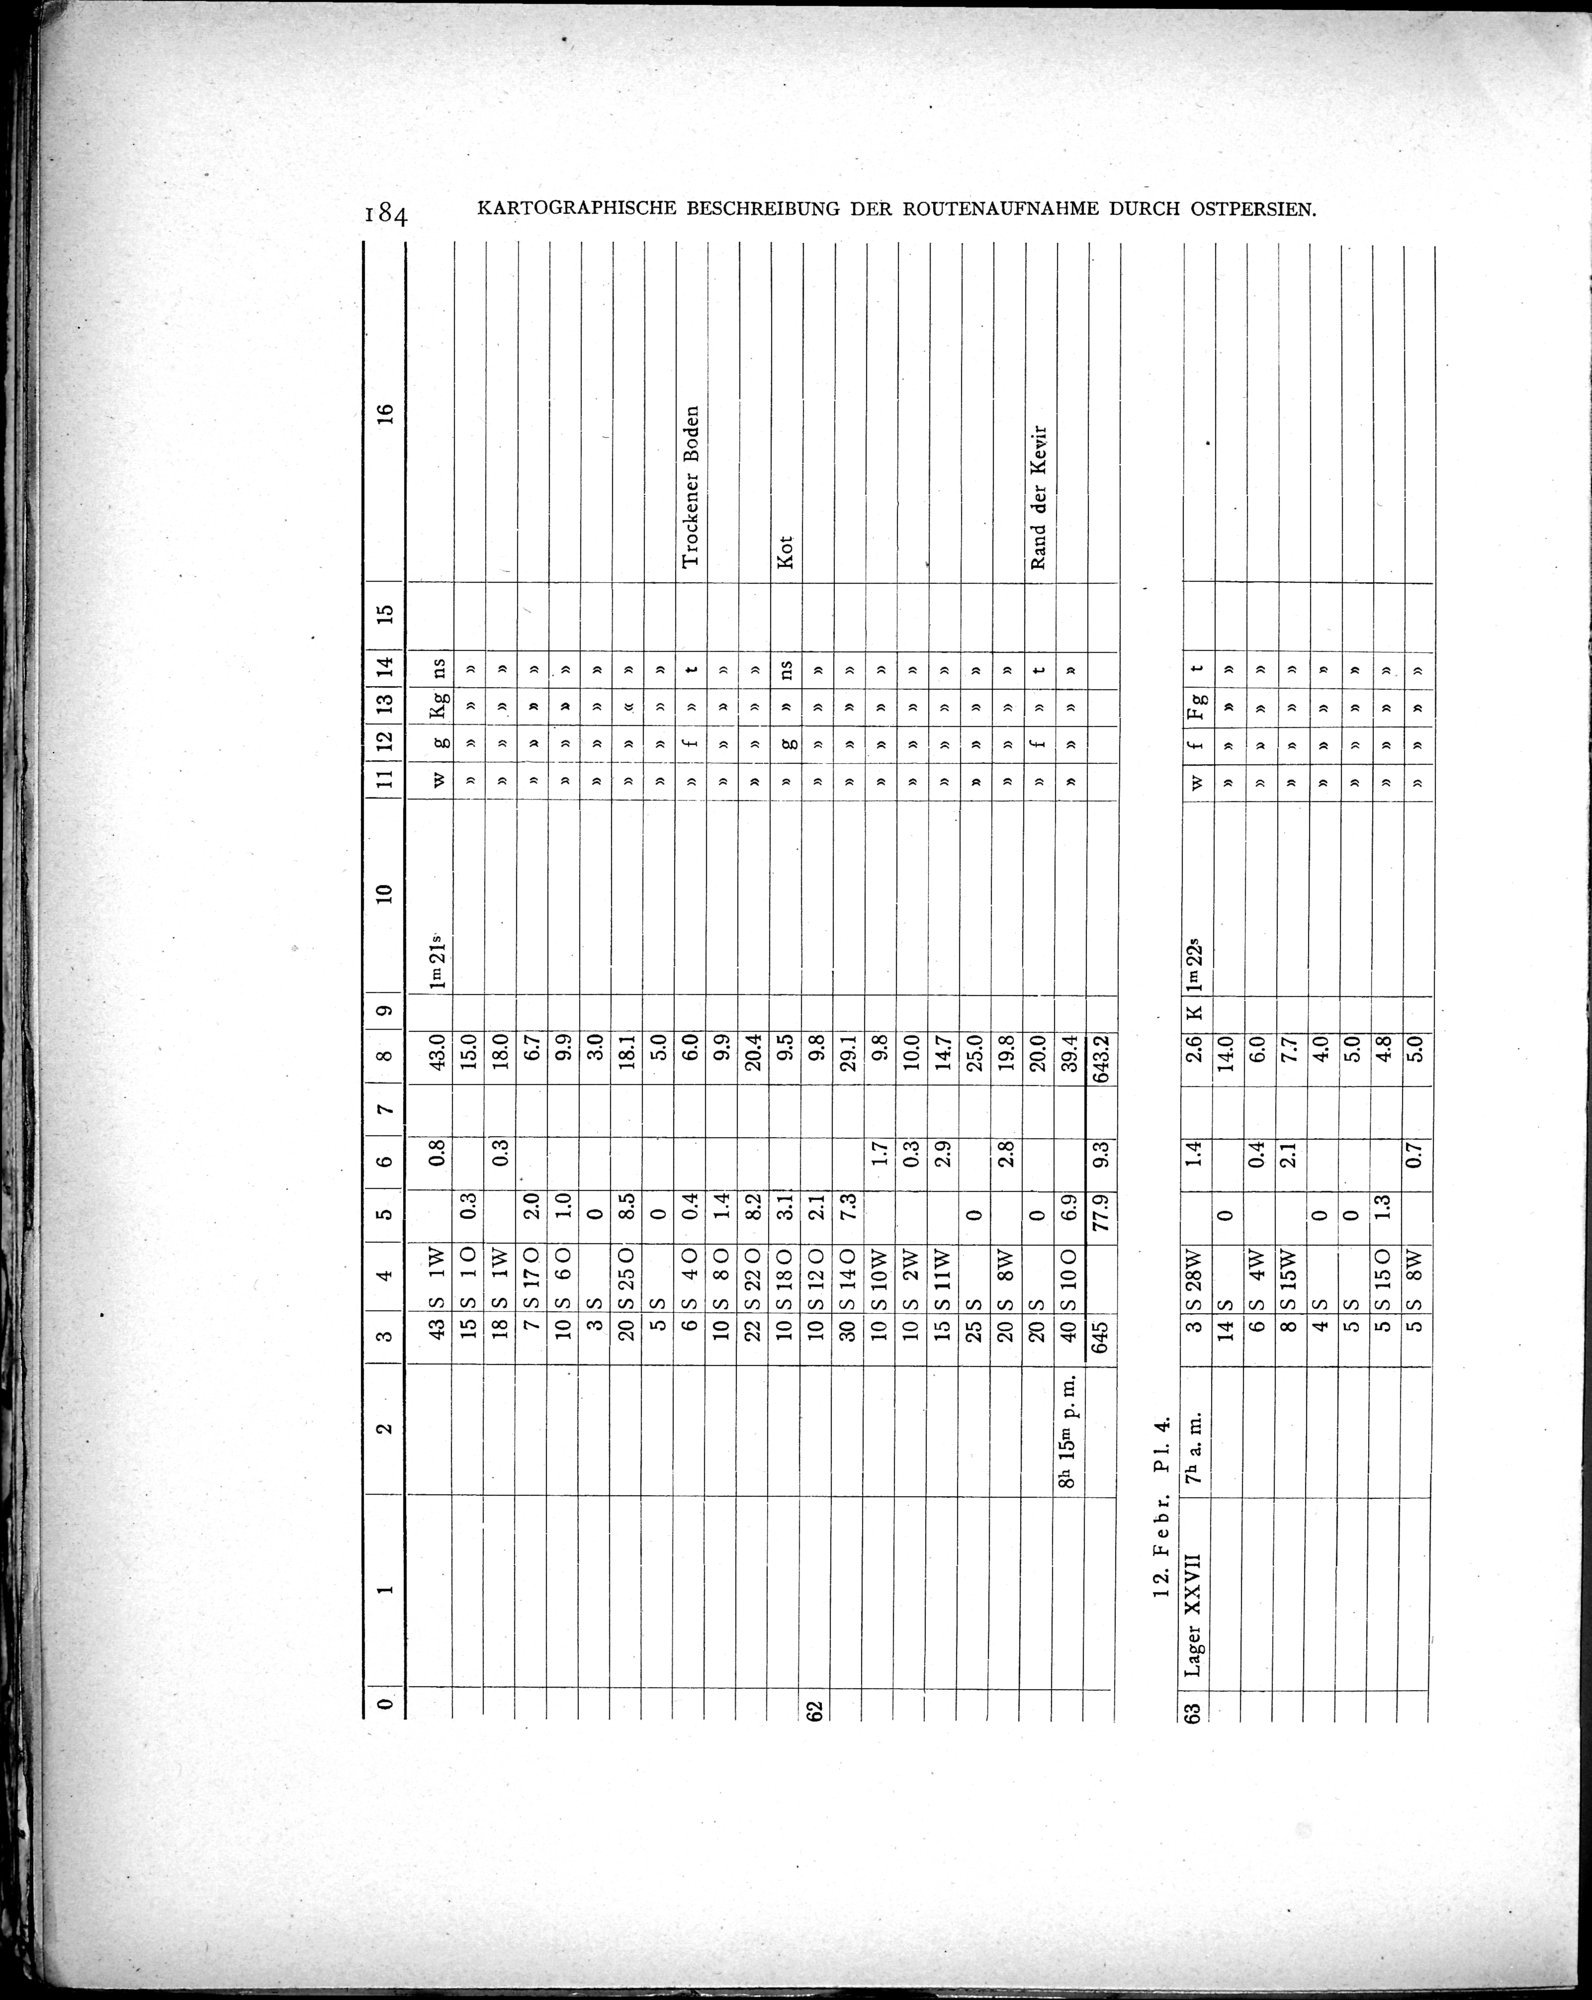 Eine Routenaufnahme durch Ostpersien : vol.2 / Page 254 (Grayscale High Resolution Image)